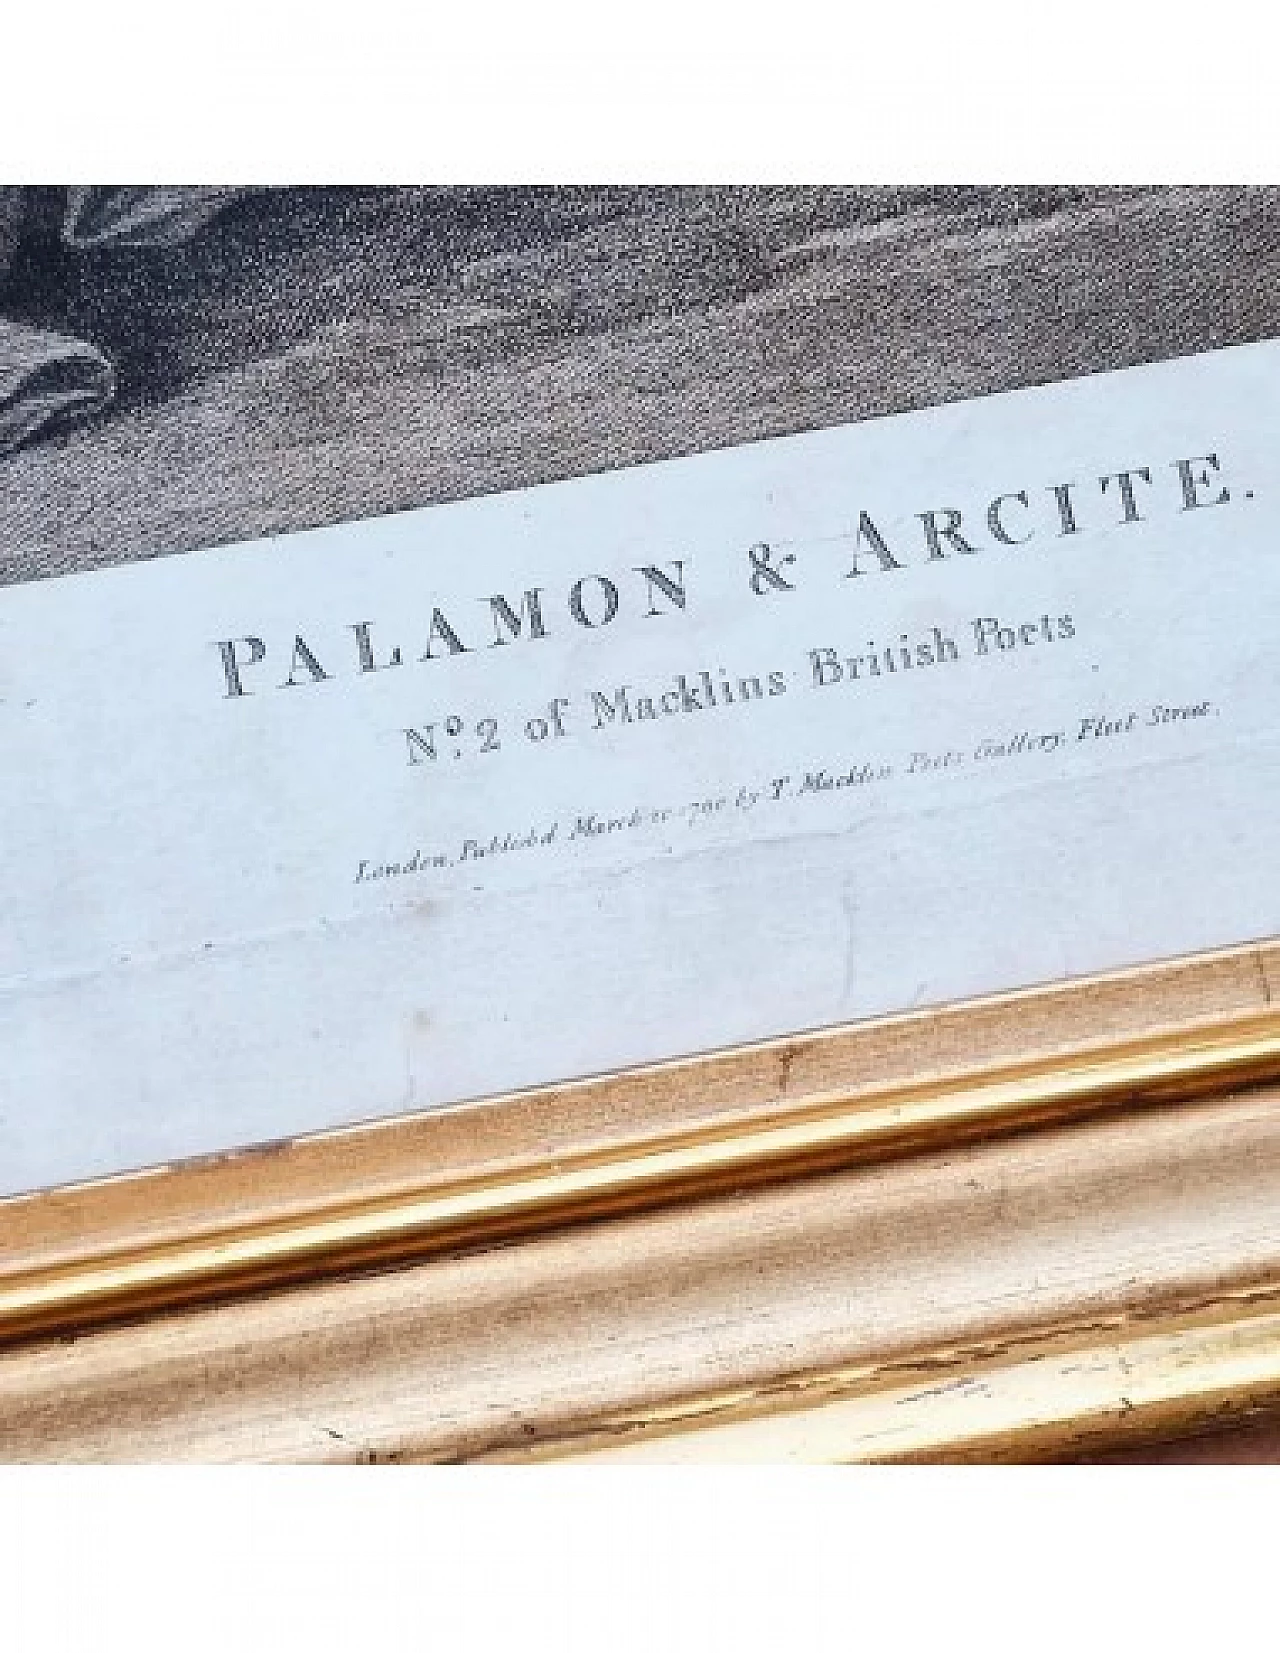 Palamone e Arcite, incisione di Francesco Bartolozzi, '700 4